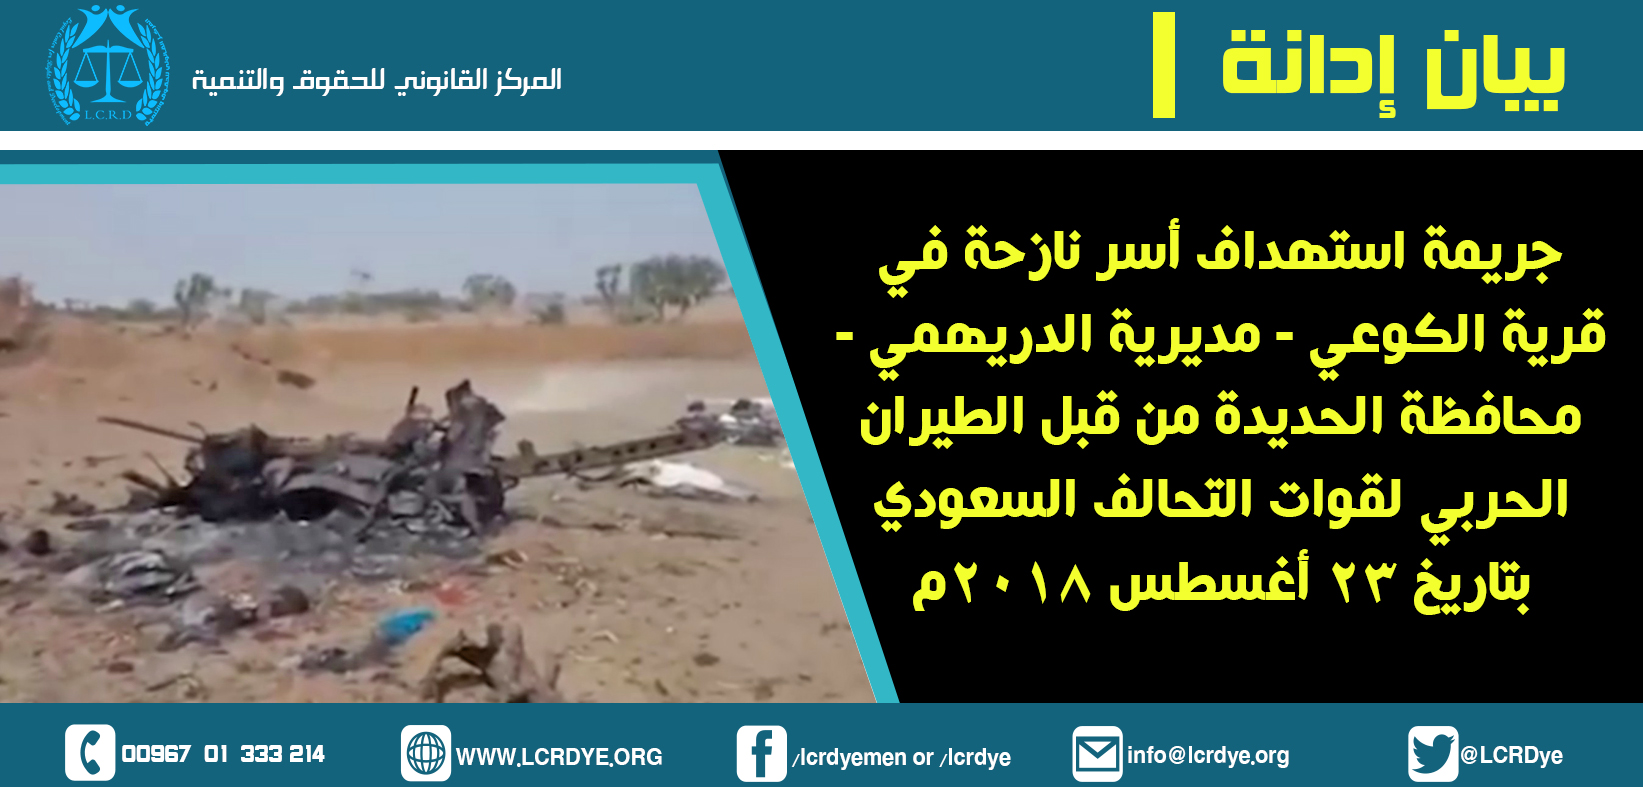 بيان إدانة استهداف أسر نازحة في قرية الكوعي – الدريهمي محافظة الحديدة 23-8